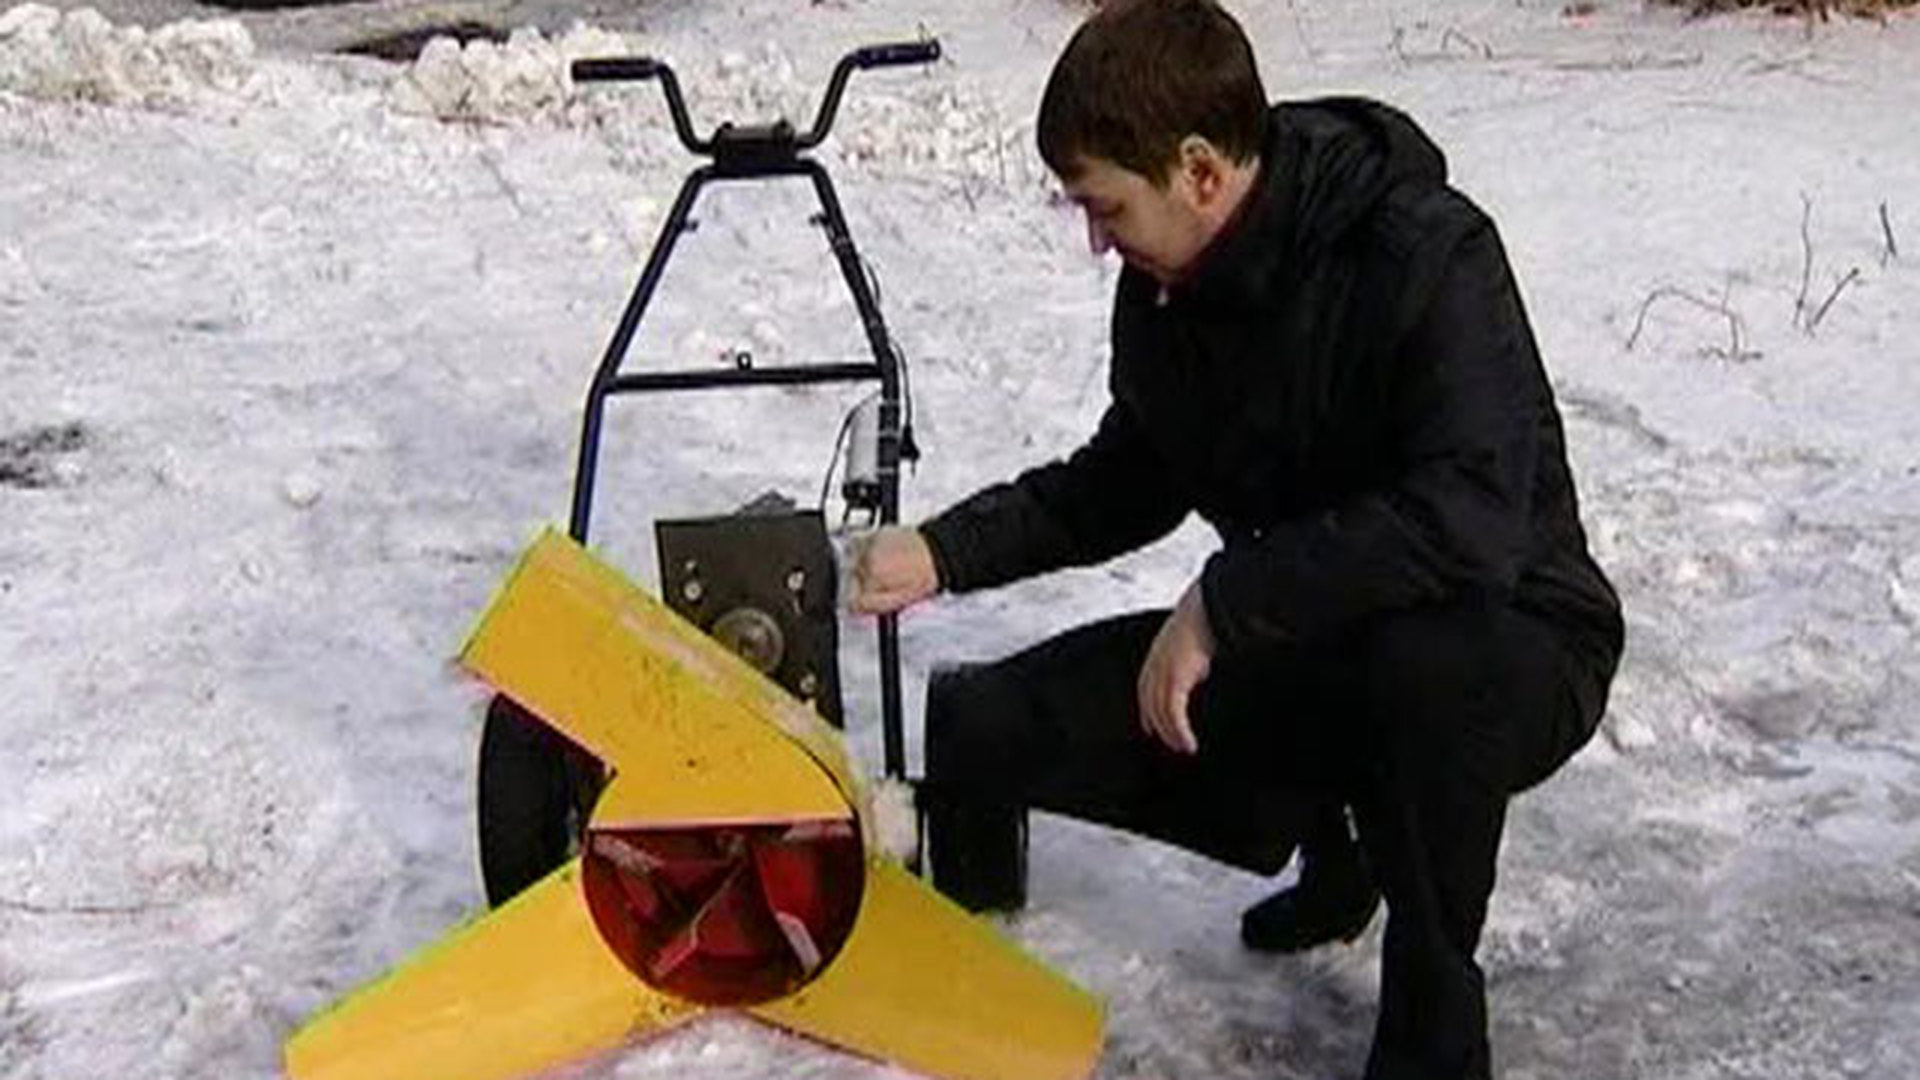 Снегоуборщик ксм. Электро ротор для уборки снега. Шнек ротор для уборки снега. Снегоуборщик ЛОПЛОШ электрический. Самодельный ротор для уборки снега на мотоблок.